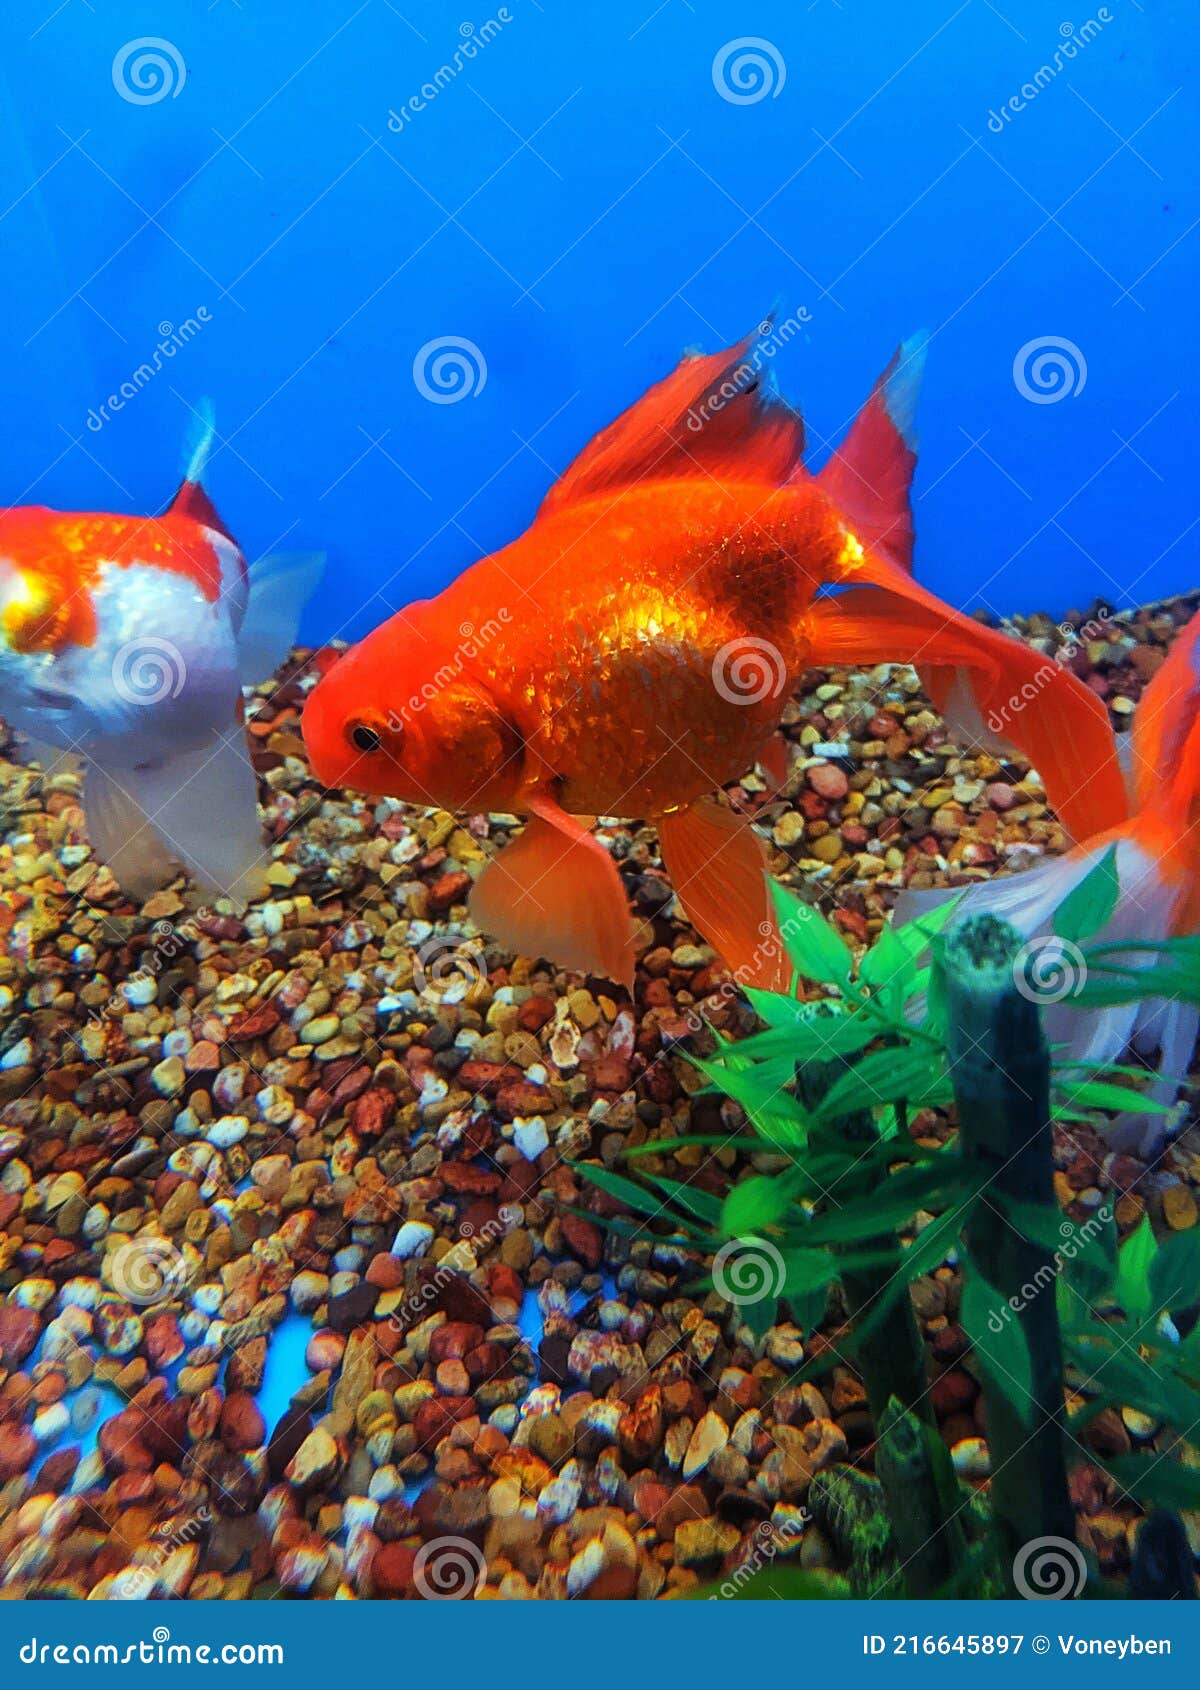 Fantail Goldfish in Aquarium Stock Image - Image of dorsal, common:  216645897